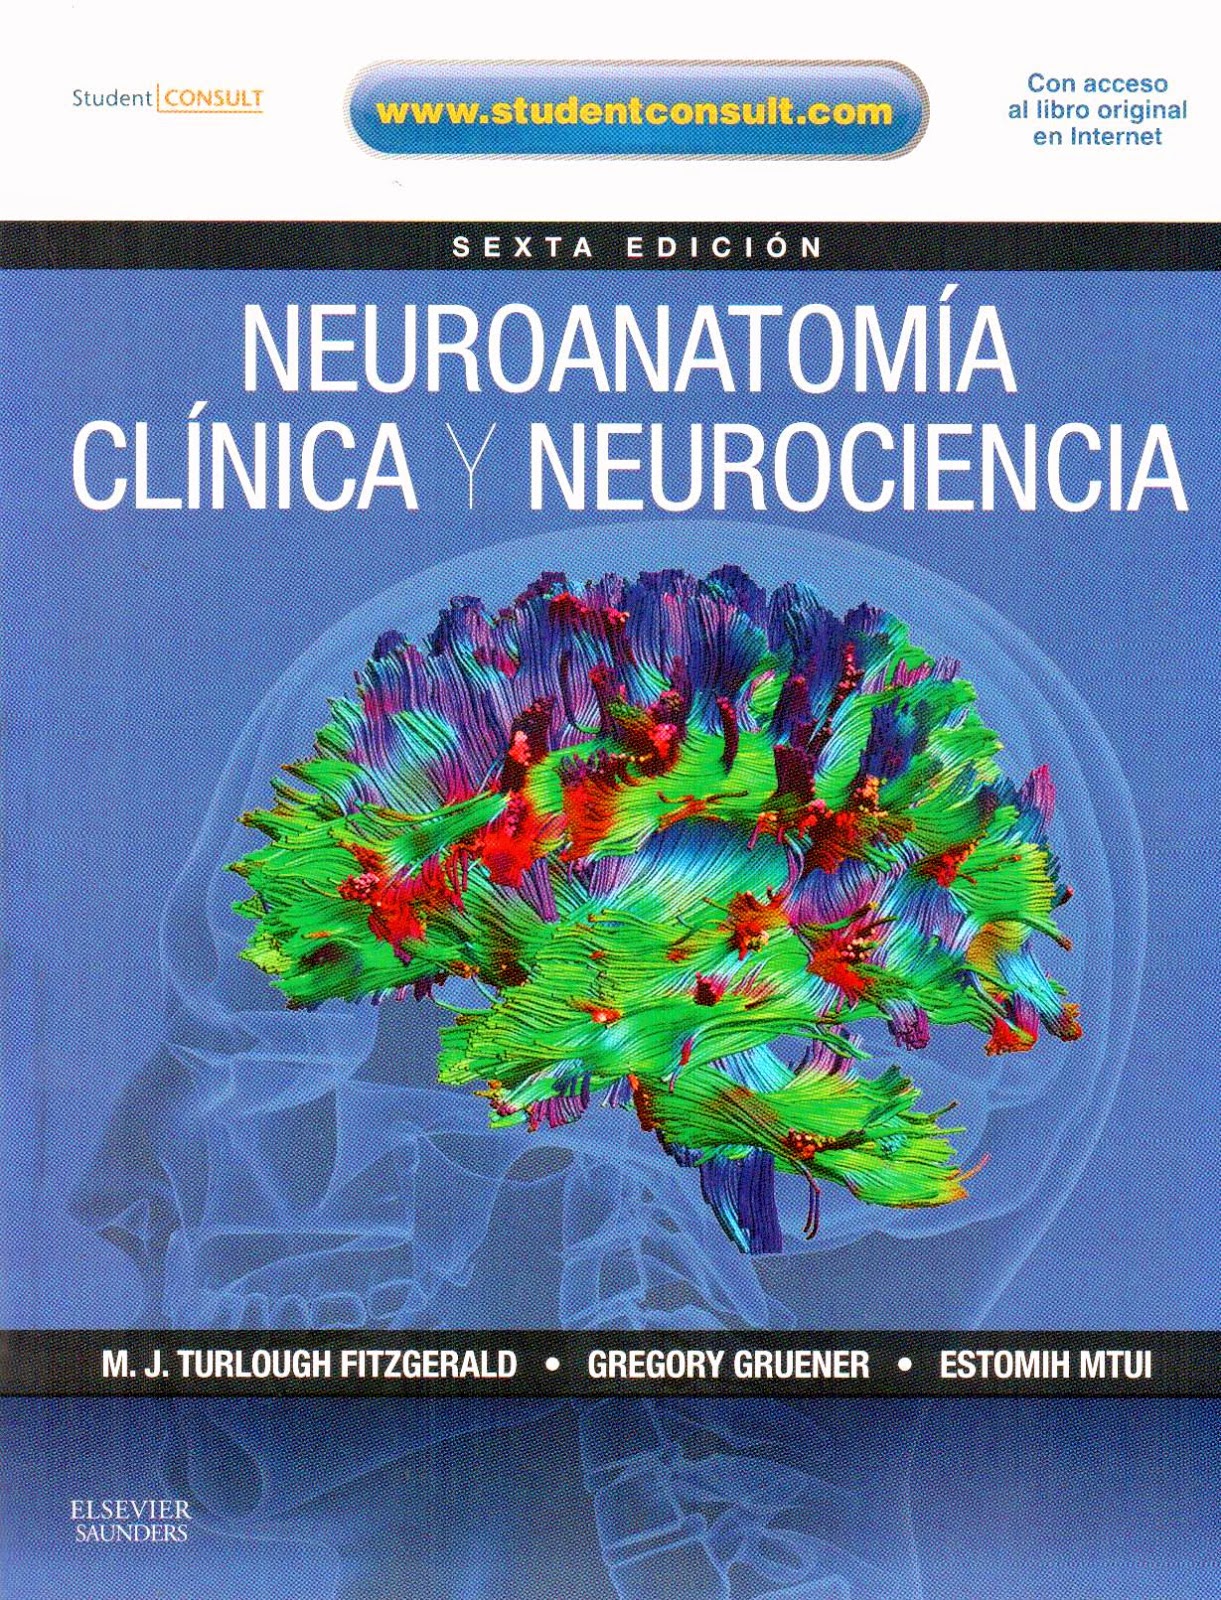 Neuroanatomia Snell 7 Edicion Pdf 27